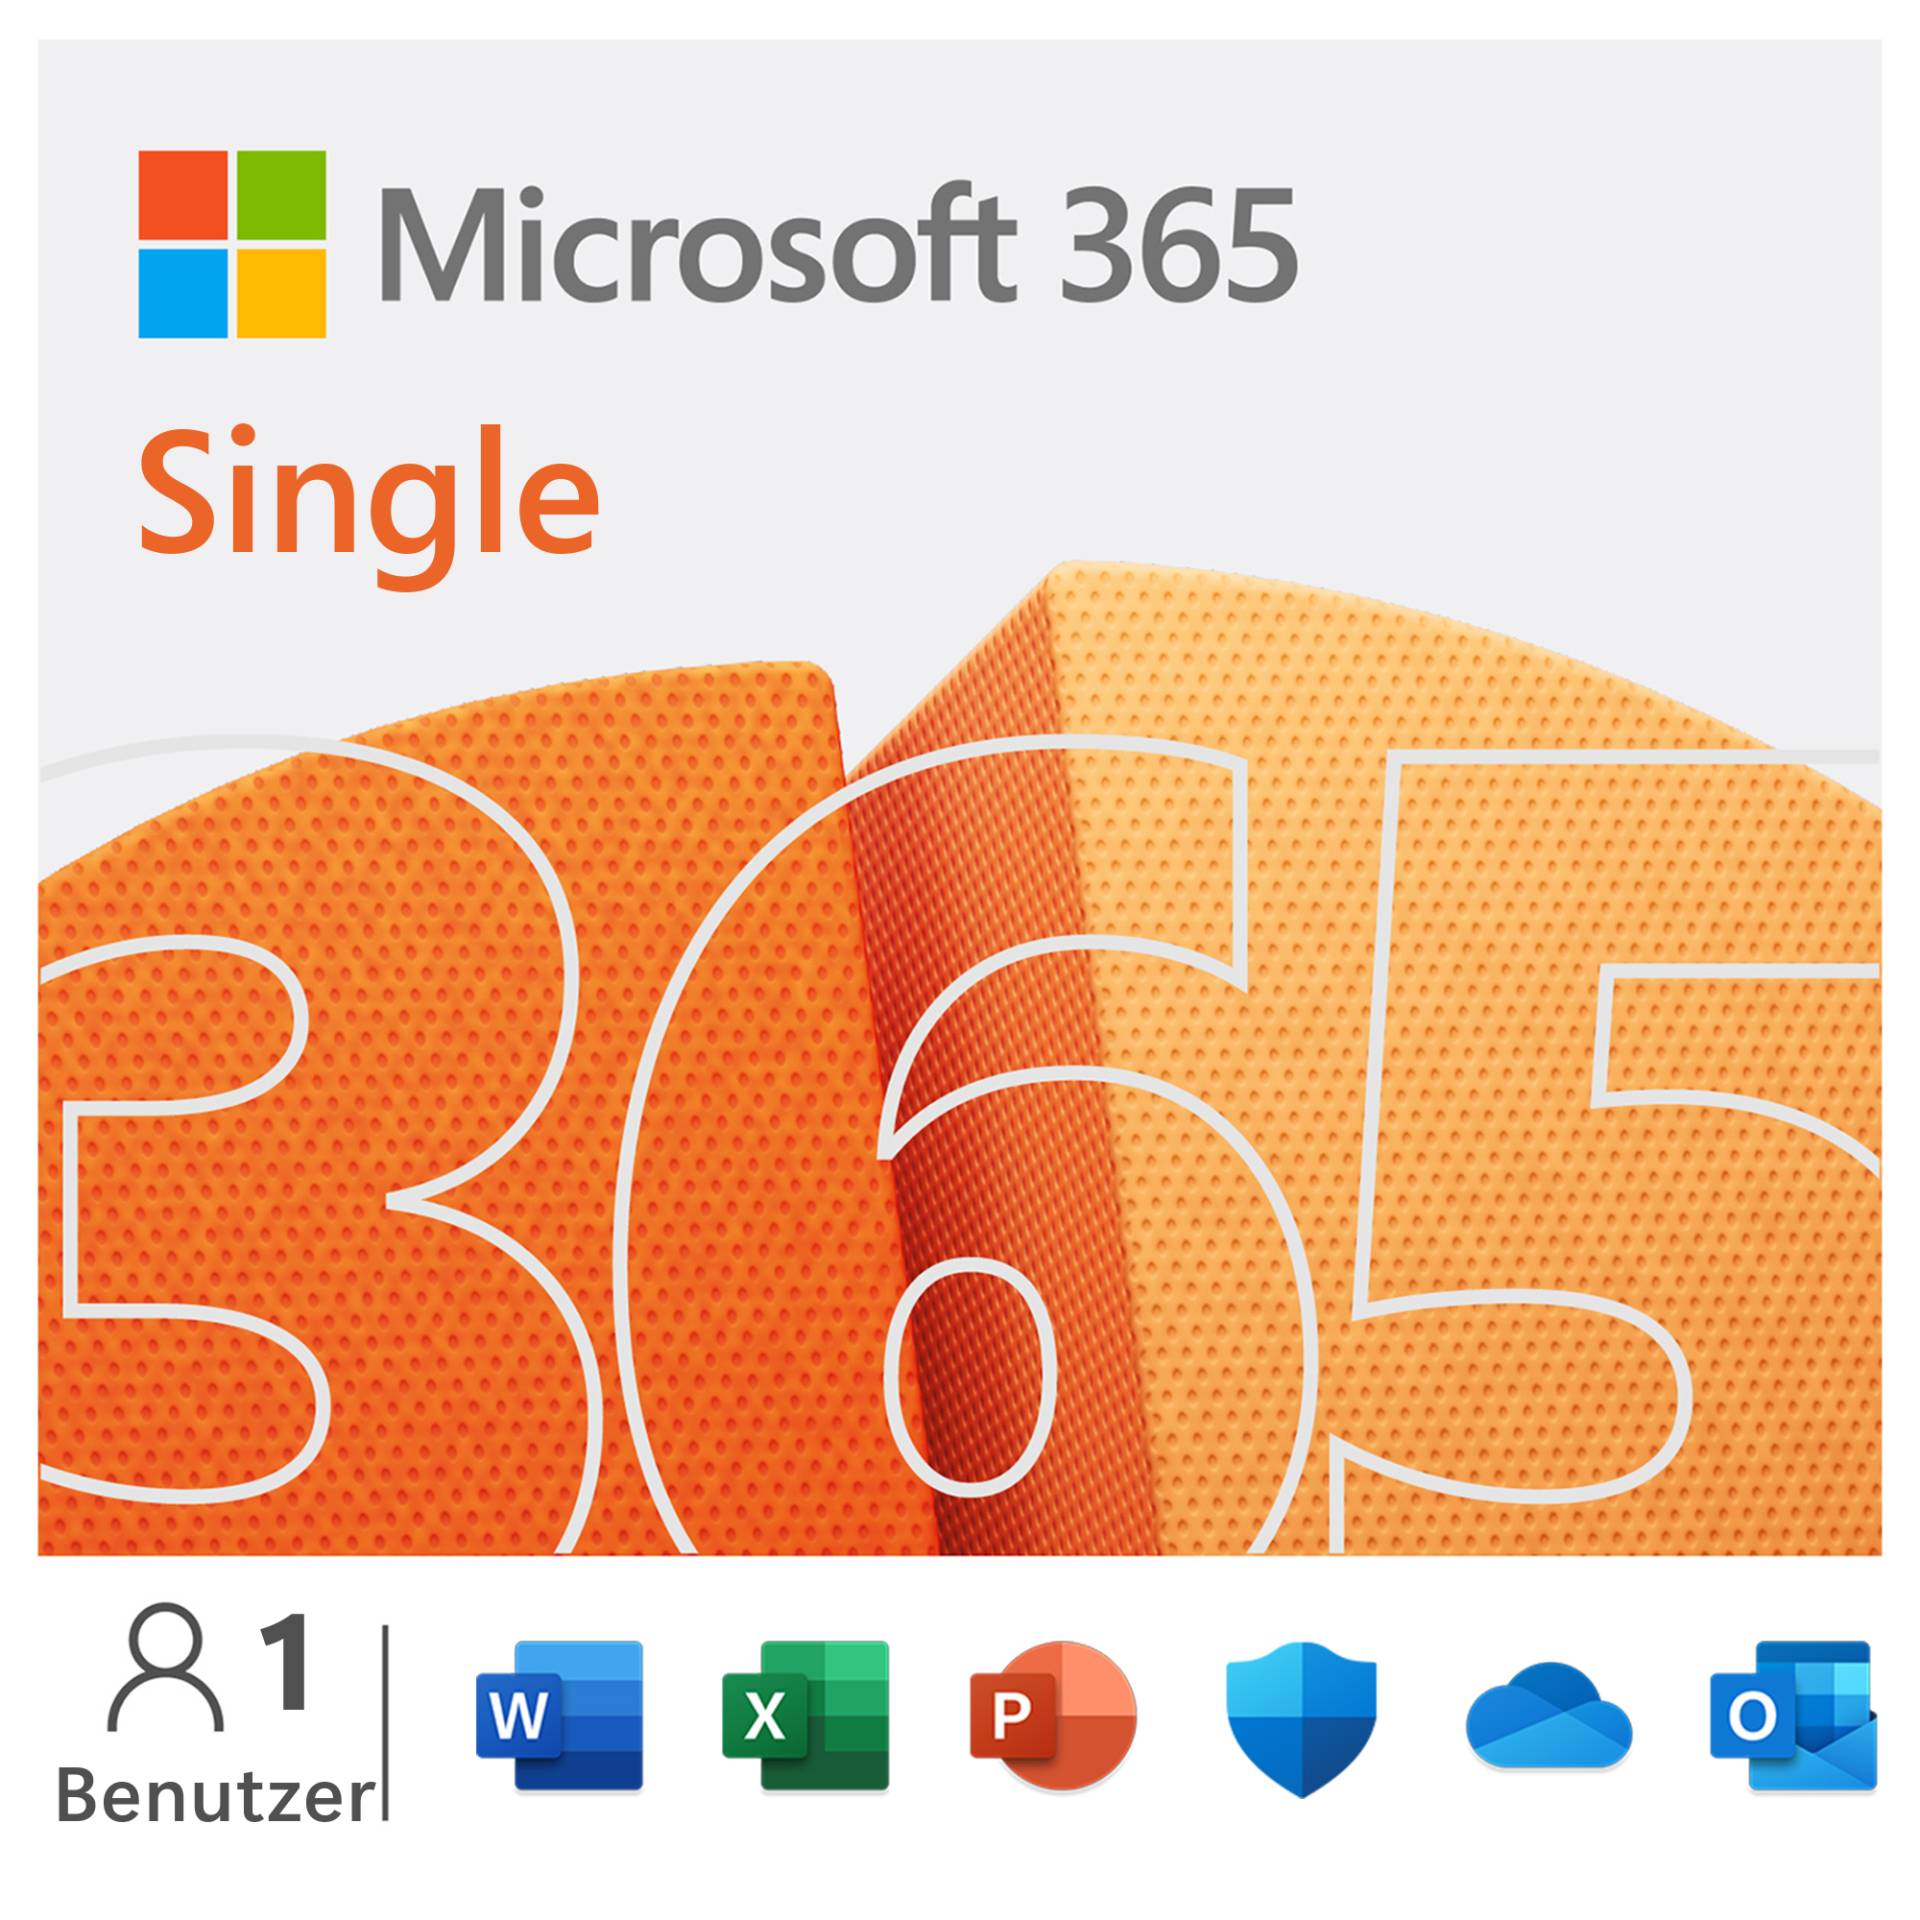 Microsoft 365 Single [1 Benutzer / 1 Jahr] - inkl. Office 365 mit Word, Excel, PowerPoint, OneNote, Outlook, Access von Microsoft